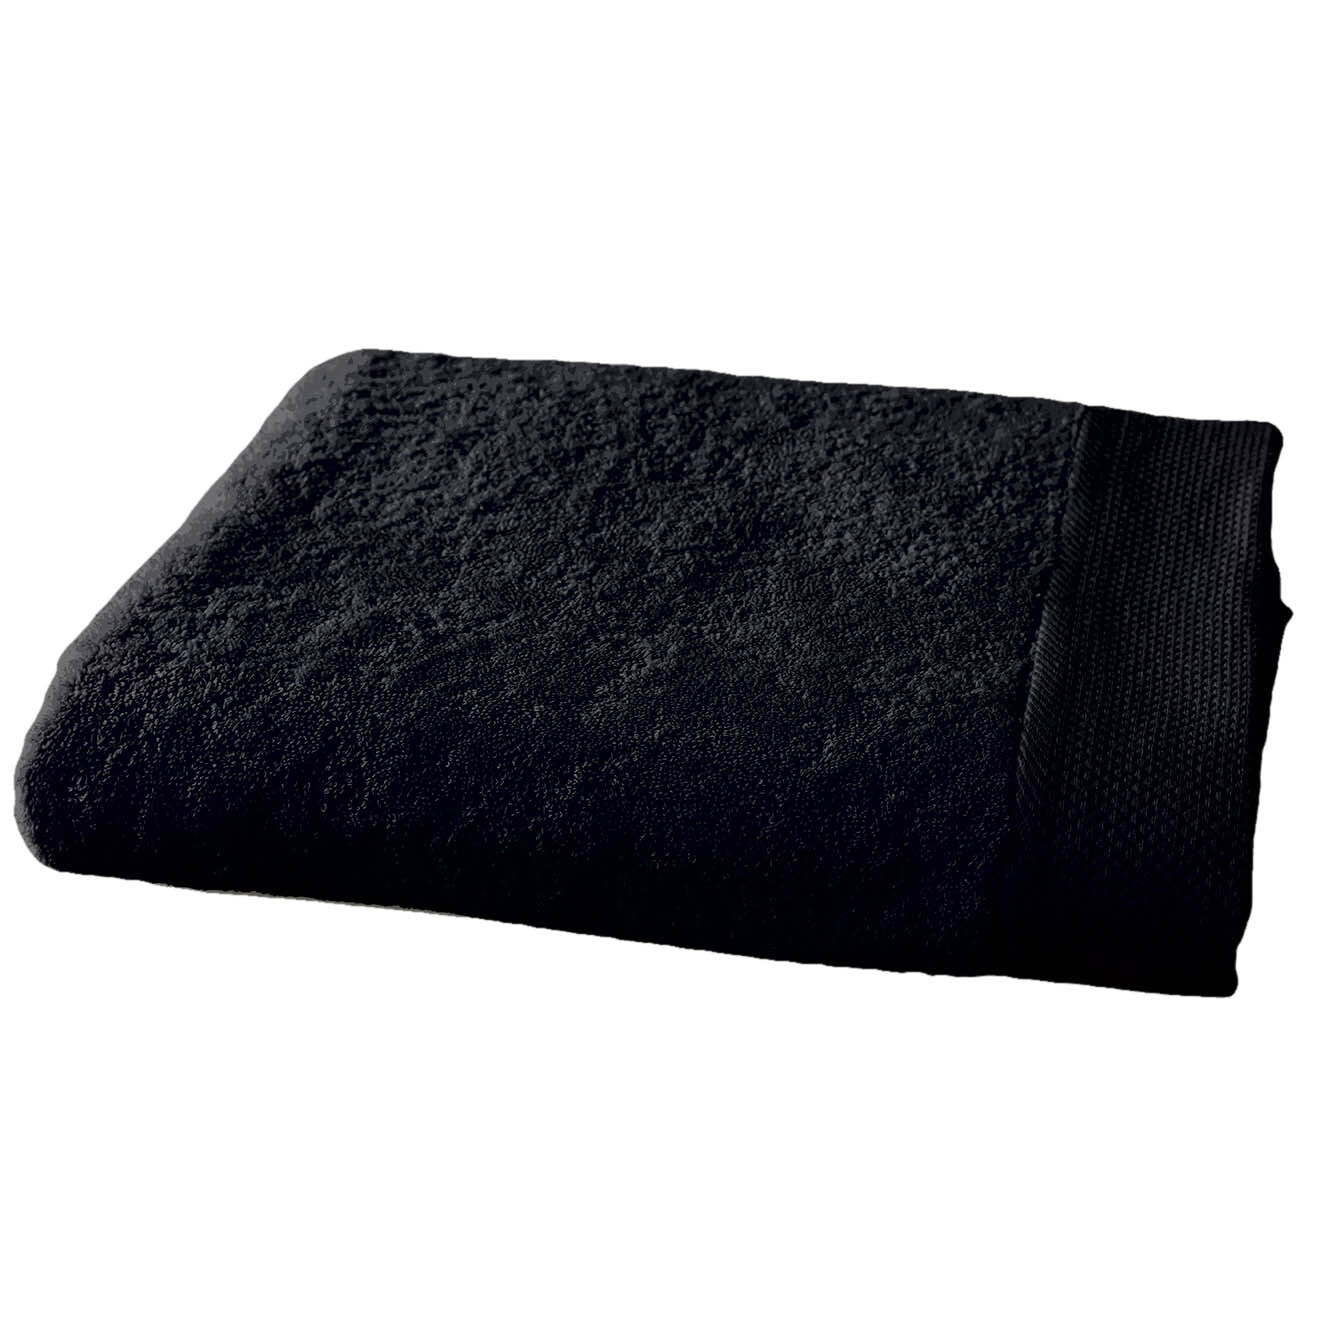 soft by perle de coton - drap de bain noir - 100x150 cm